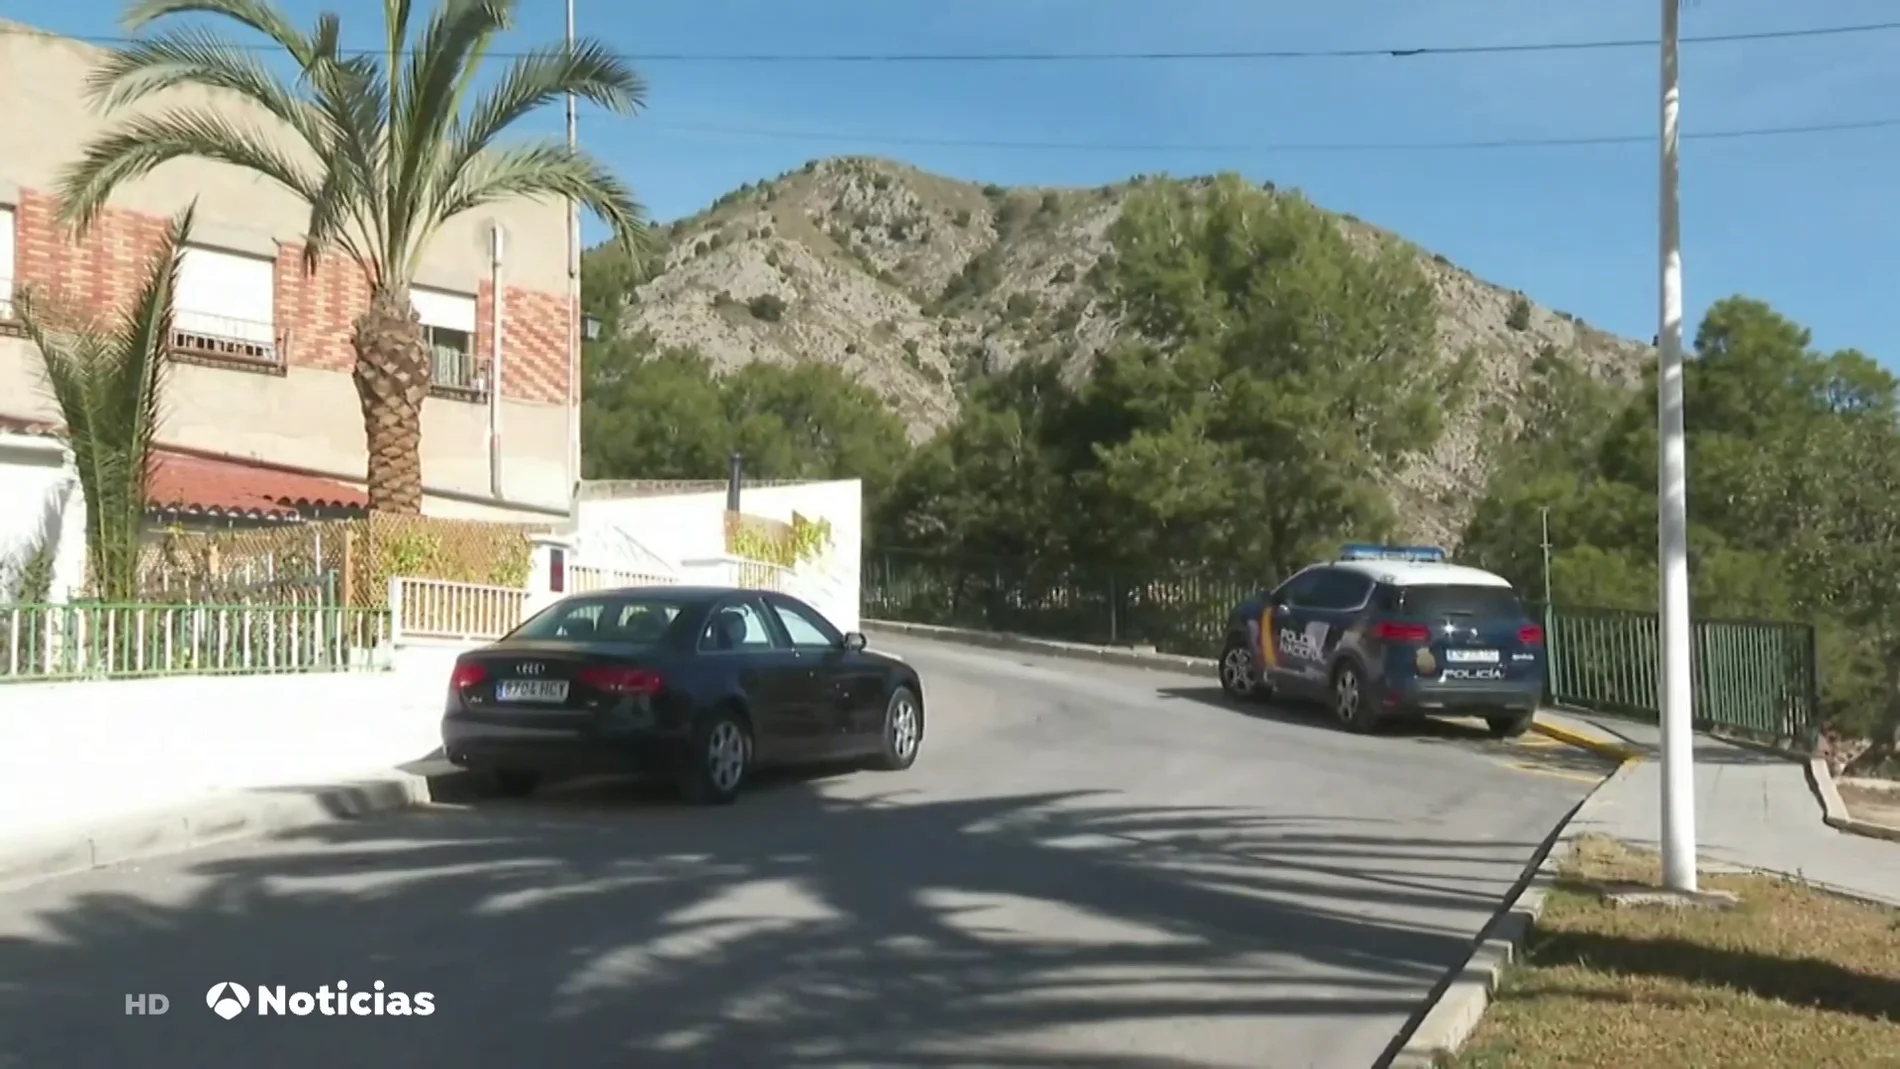 La Policía de Alicante busca a un hombre por, presuntamente, acuchillar, agredir y cortar el pelo a su exnovia en plena calle